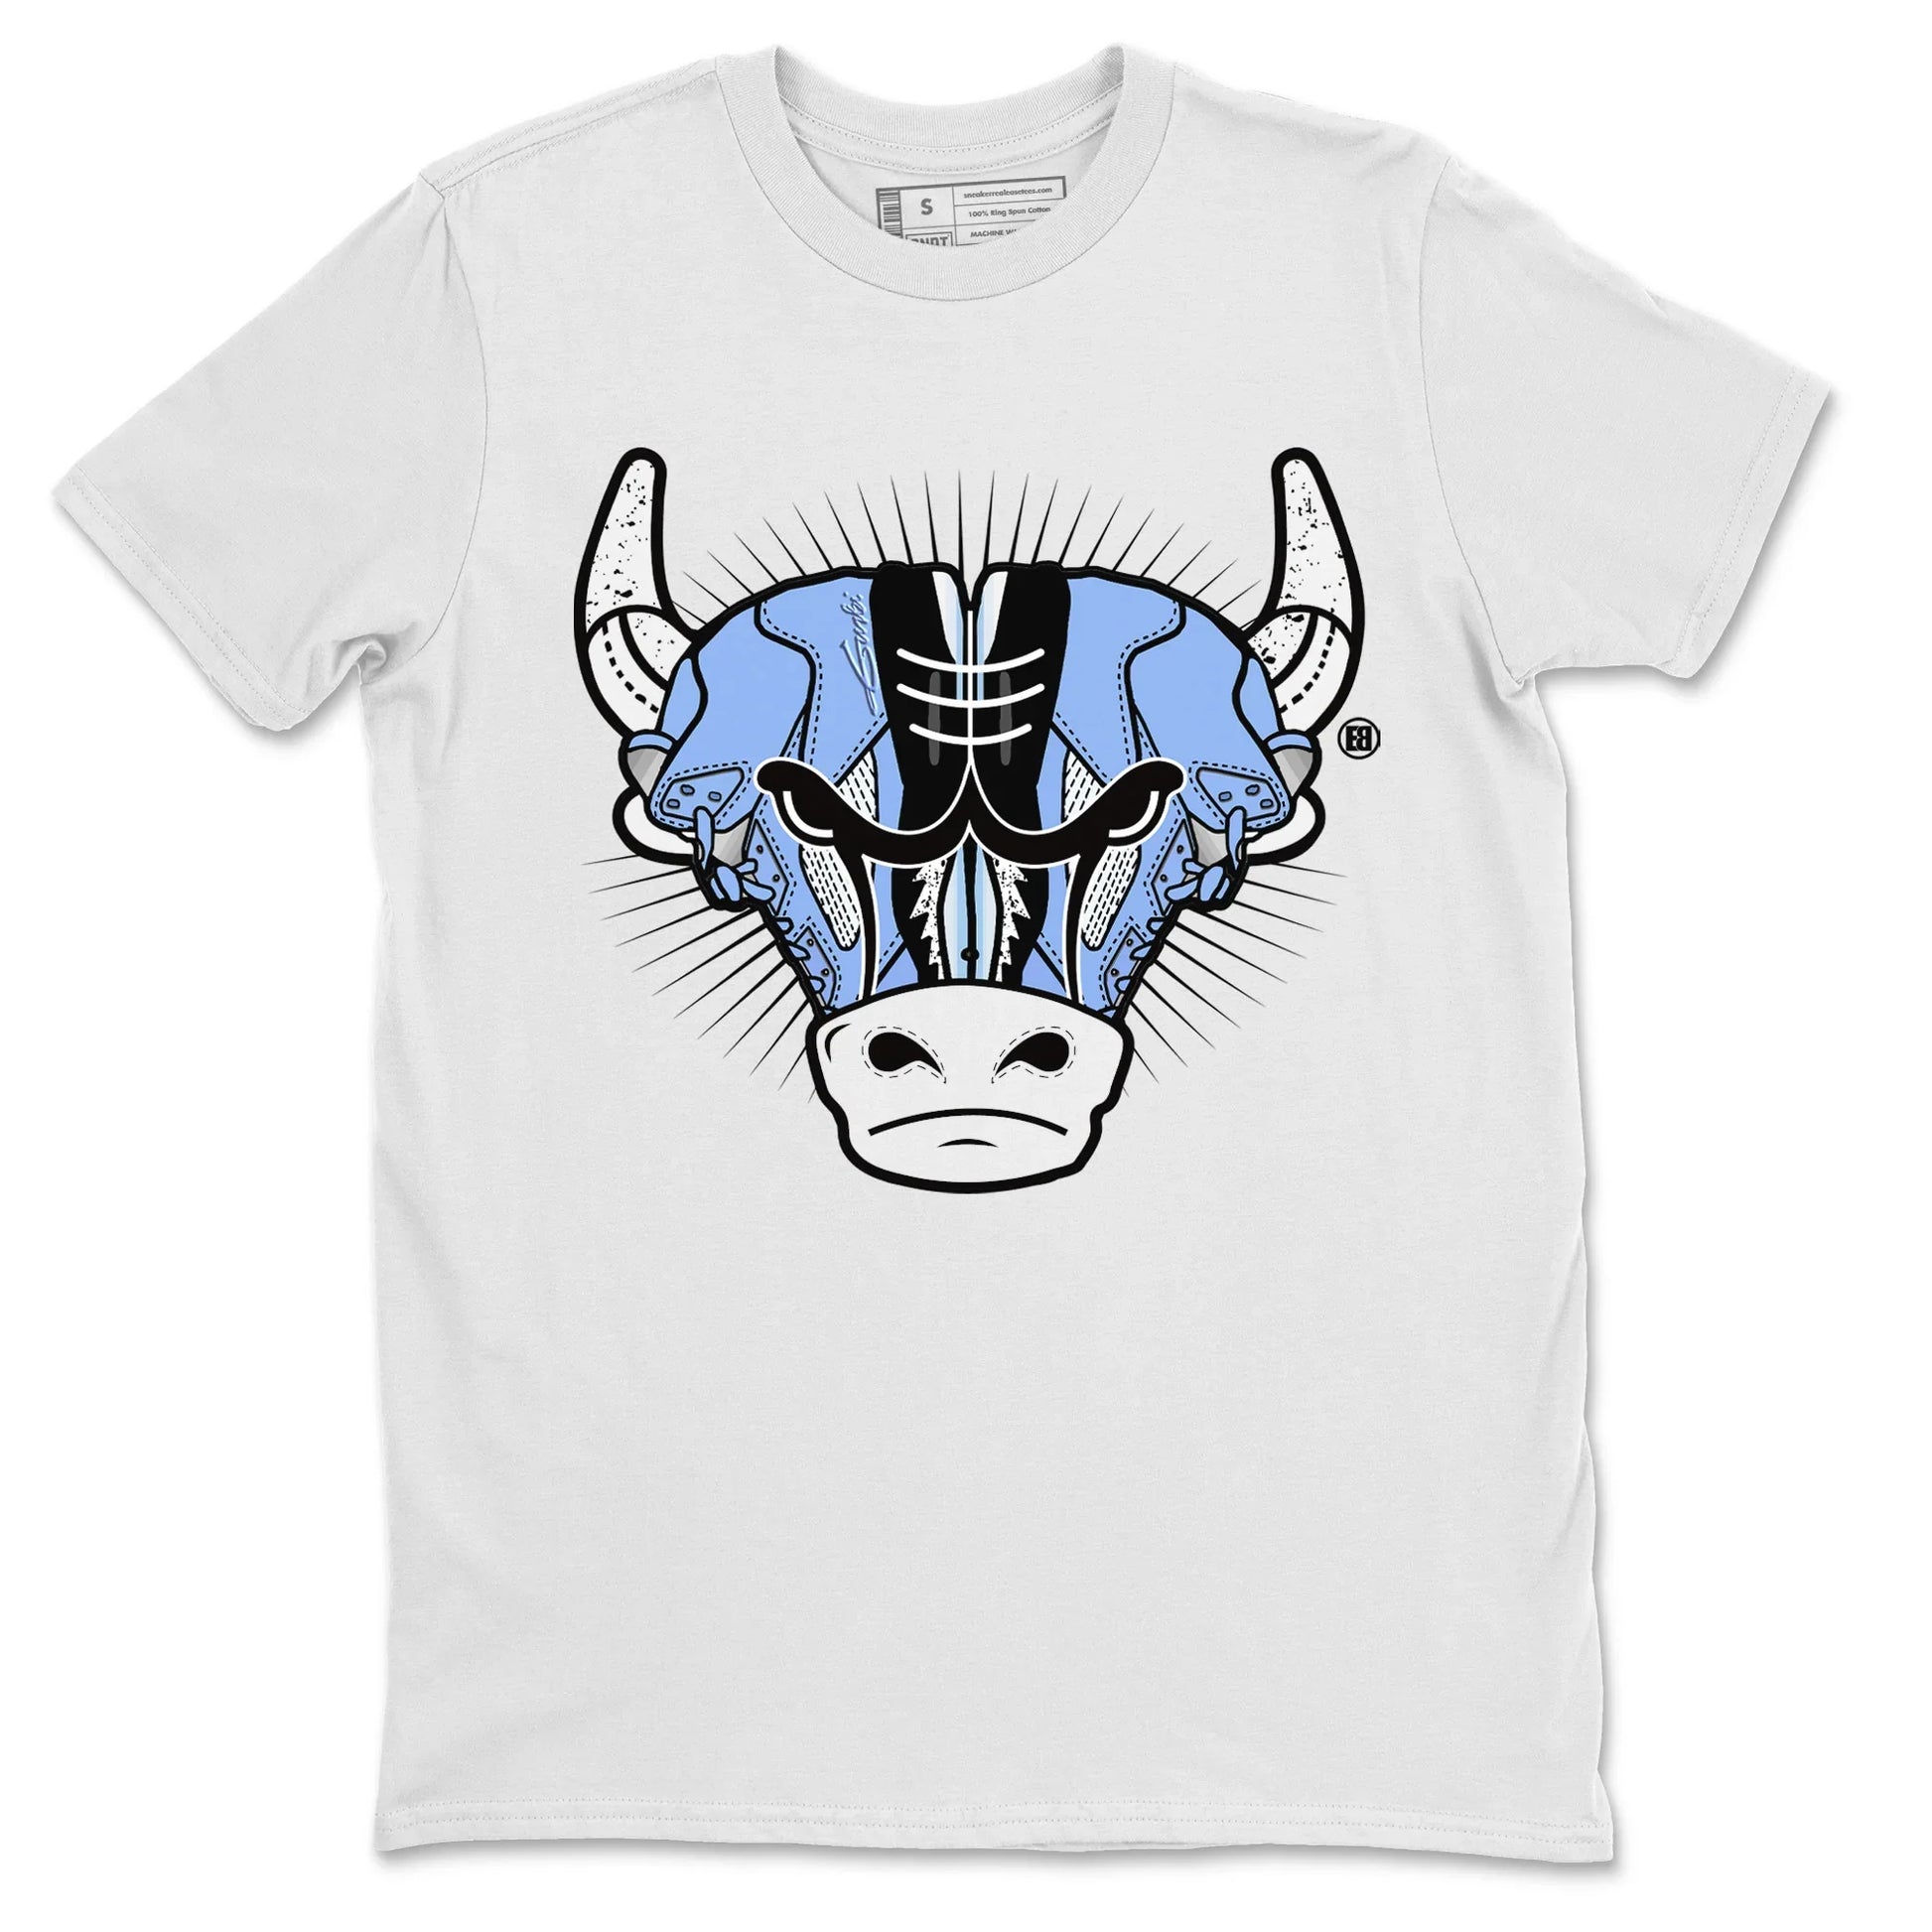 SNKADX Air Jordan 5 Retro Raging Bull 23 T-Shirt, Retro 5 Shirt, 23 Basketball Shirt